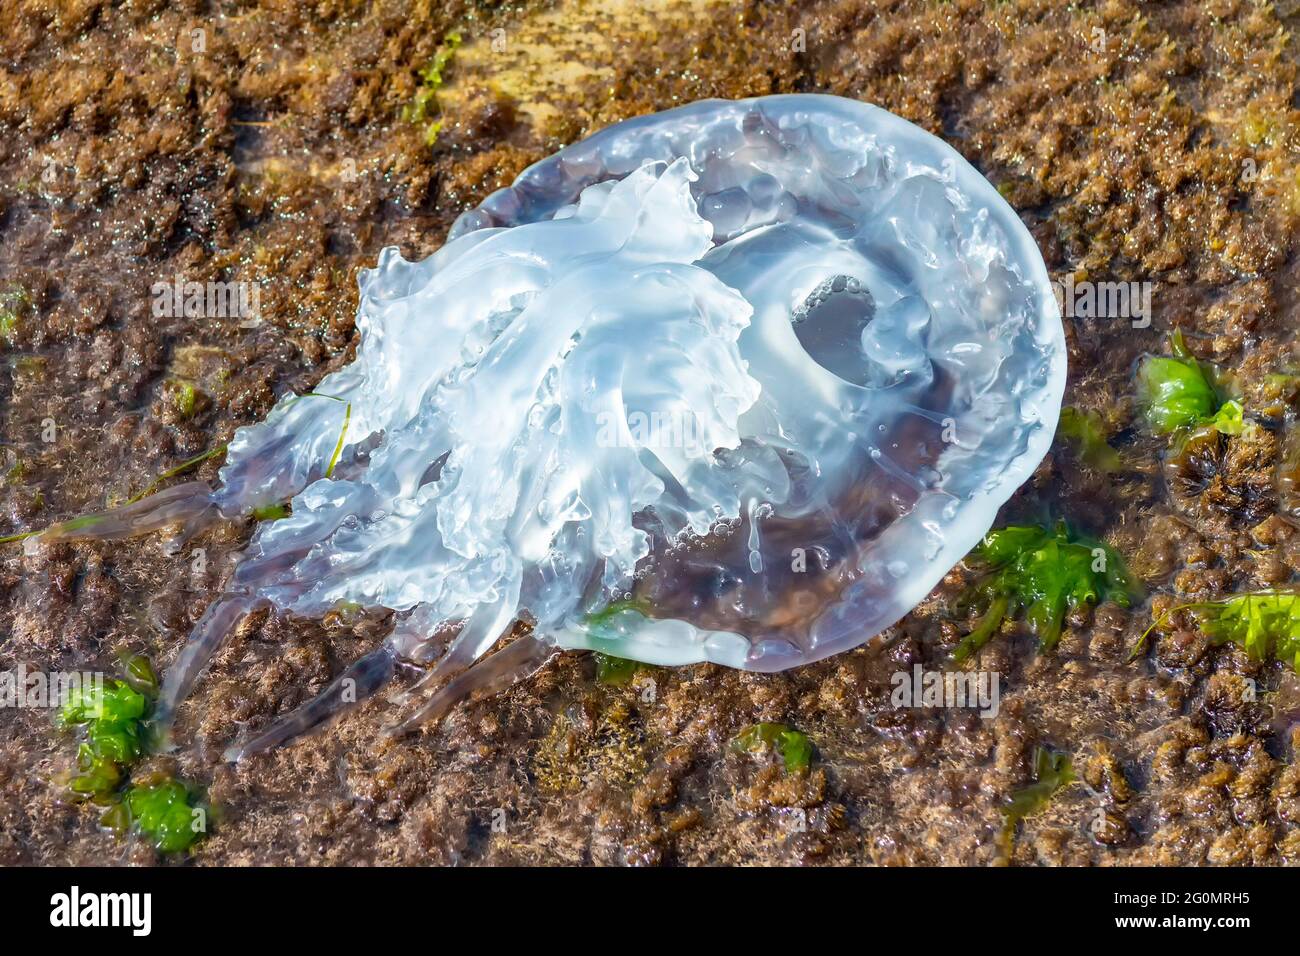 Las medusas muertas fueron lanzadas a tierra después de la tormenta, a orillas del Mar Negro. Foto de stock